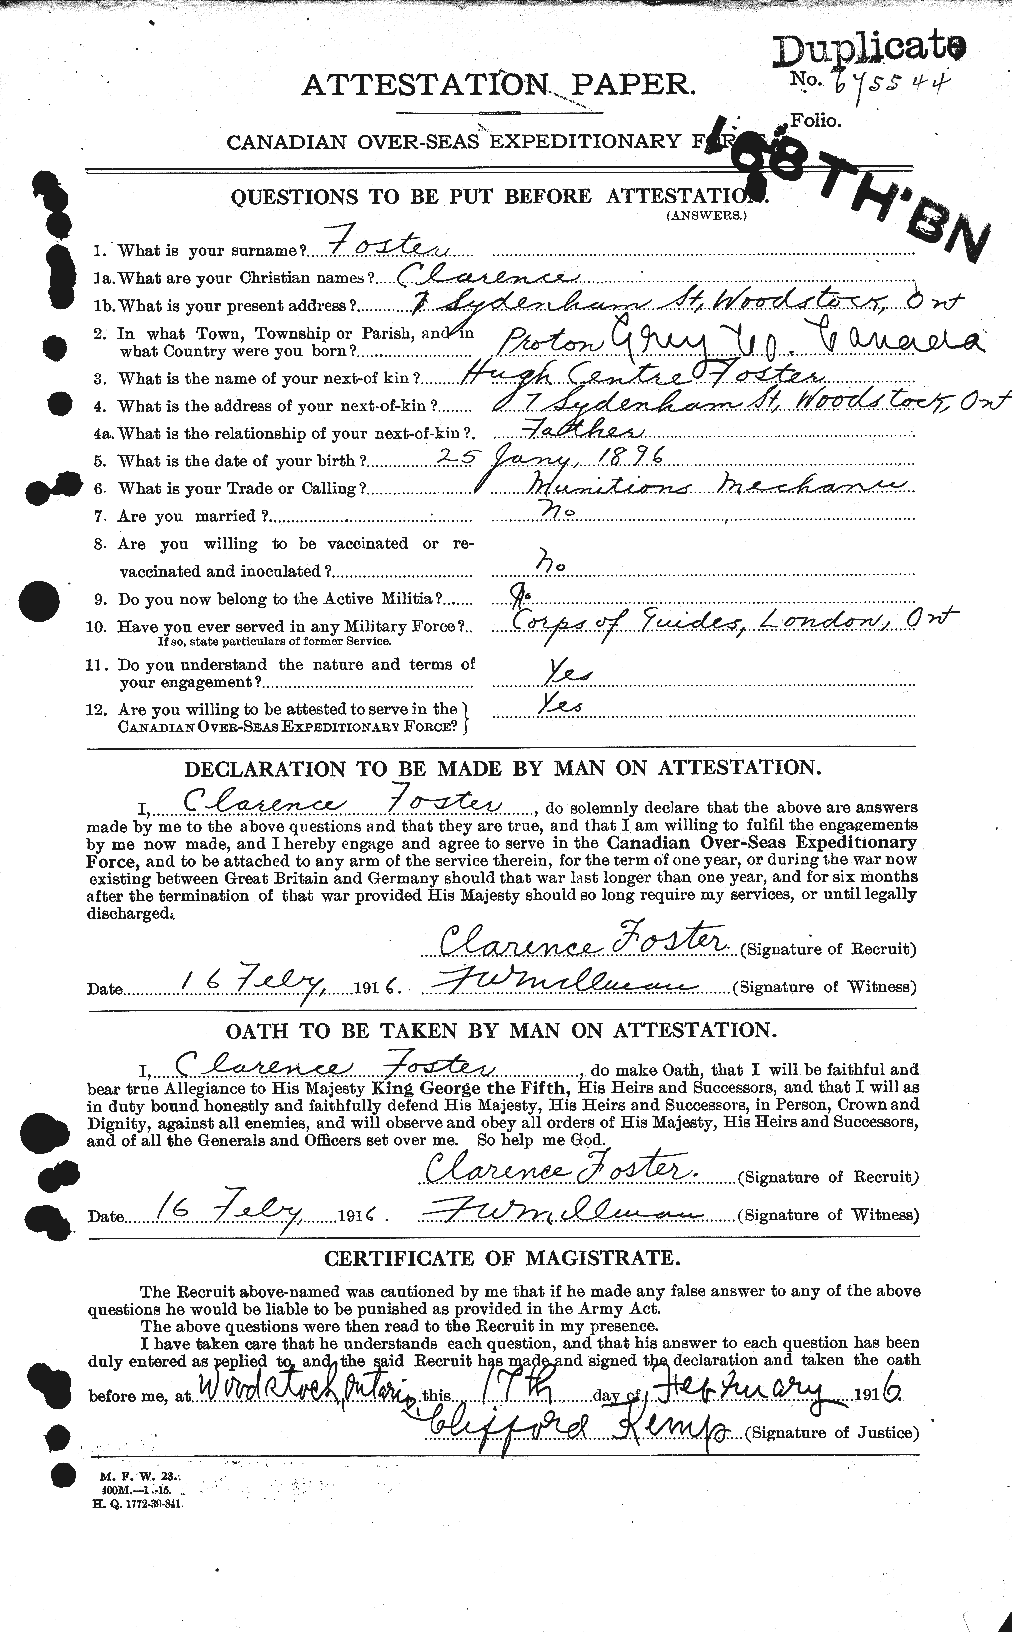 Dossiers du Personnel de la Première Guerre mondiale - CEC 330533a